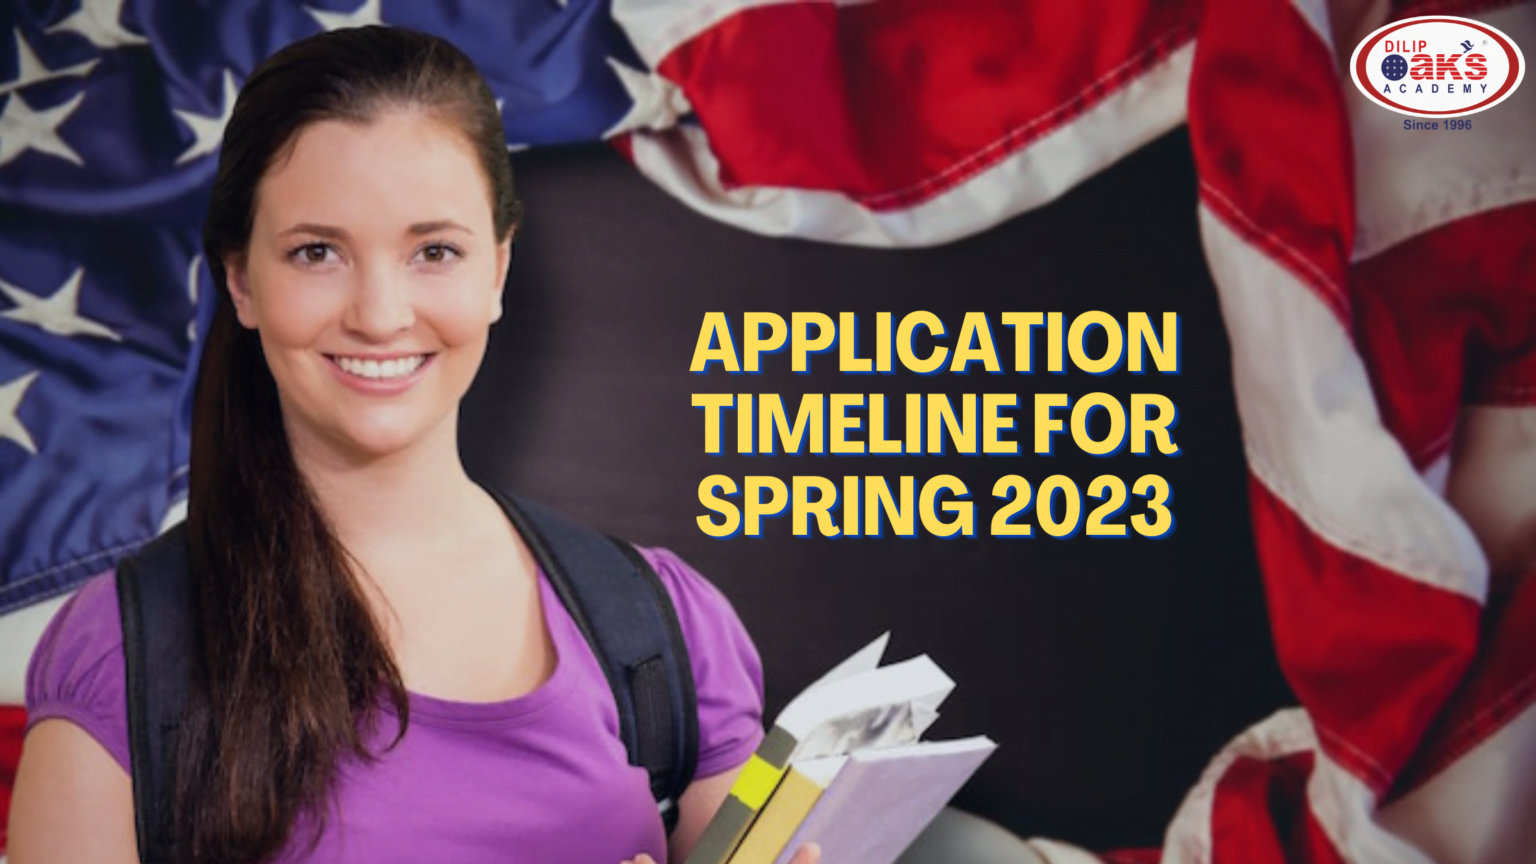 Application Timeline For Spring 2023 1536x864 